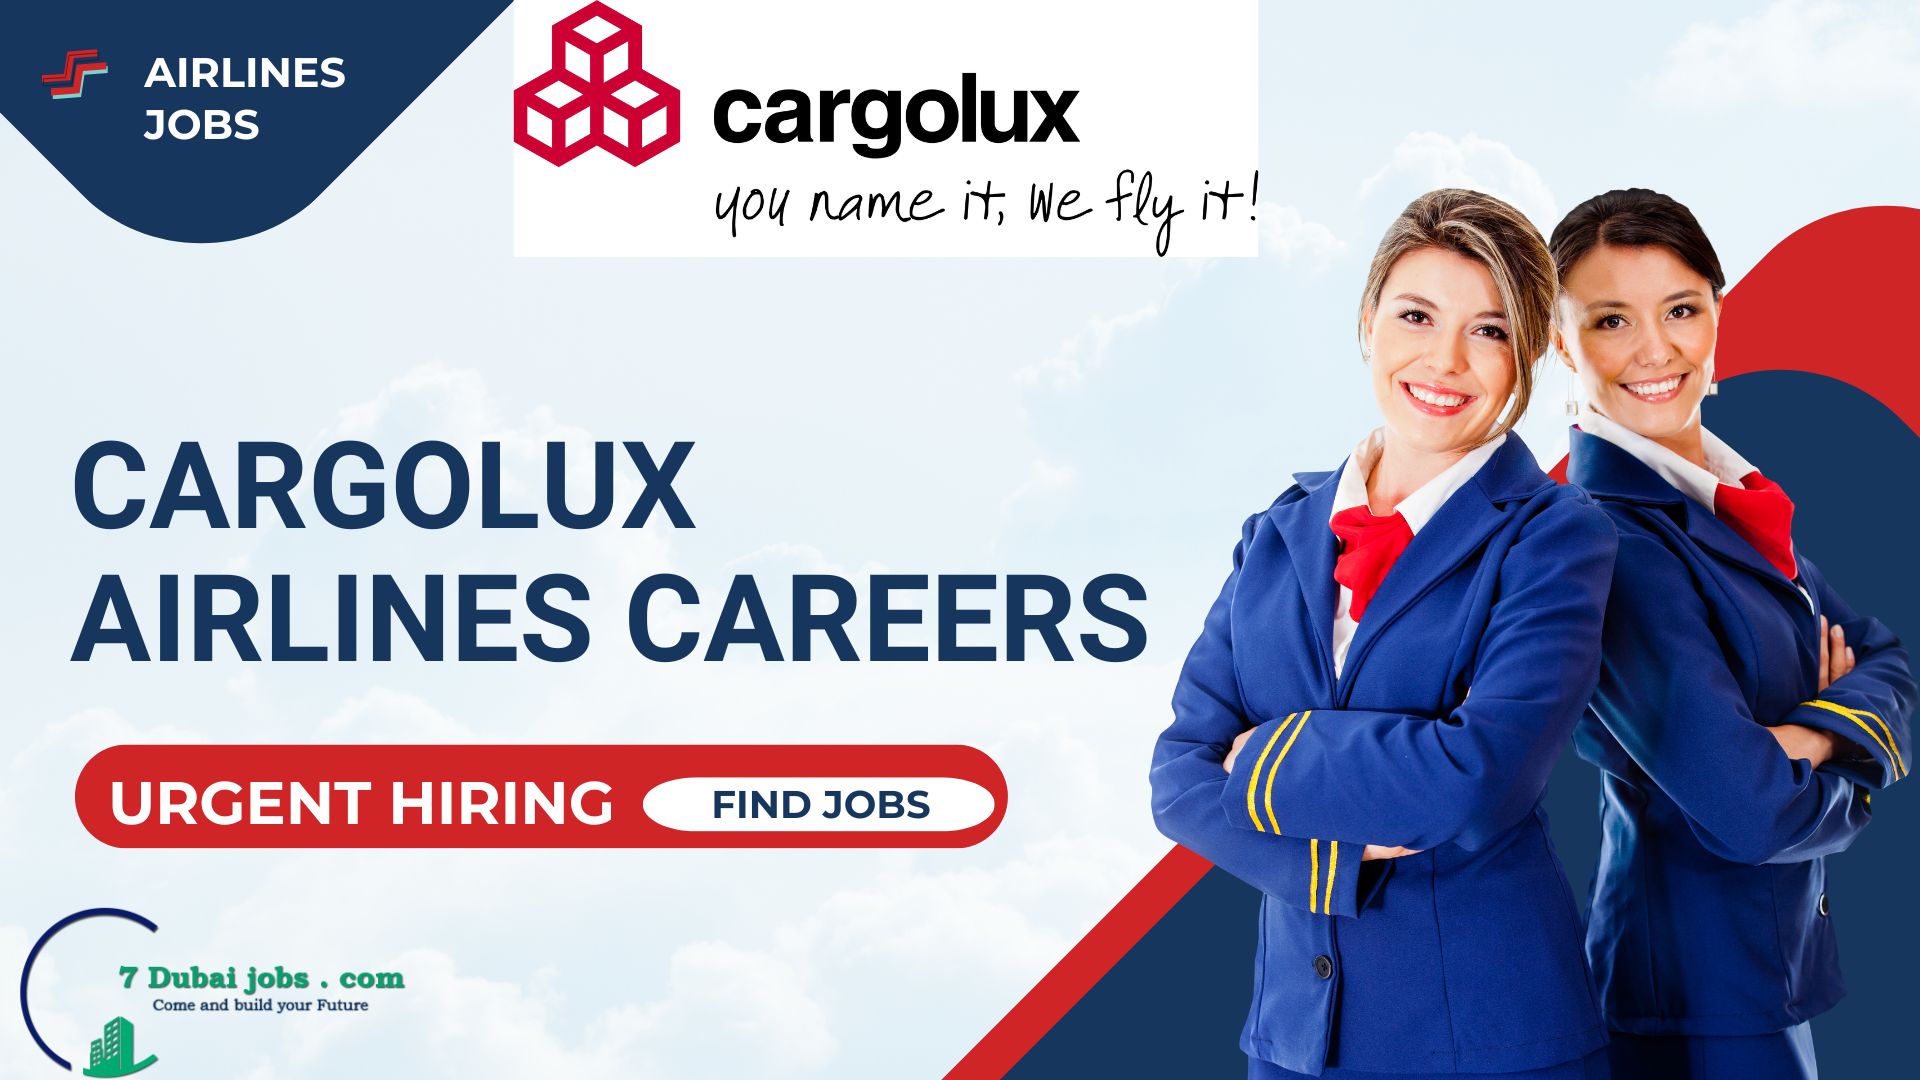 Cargolux Airlines Careers